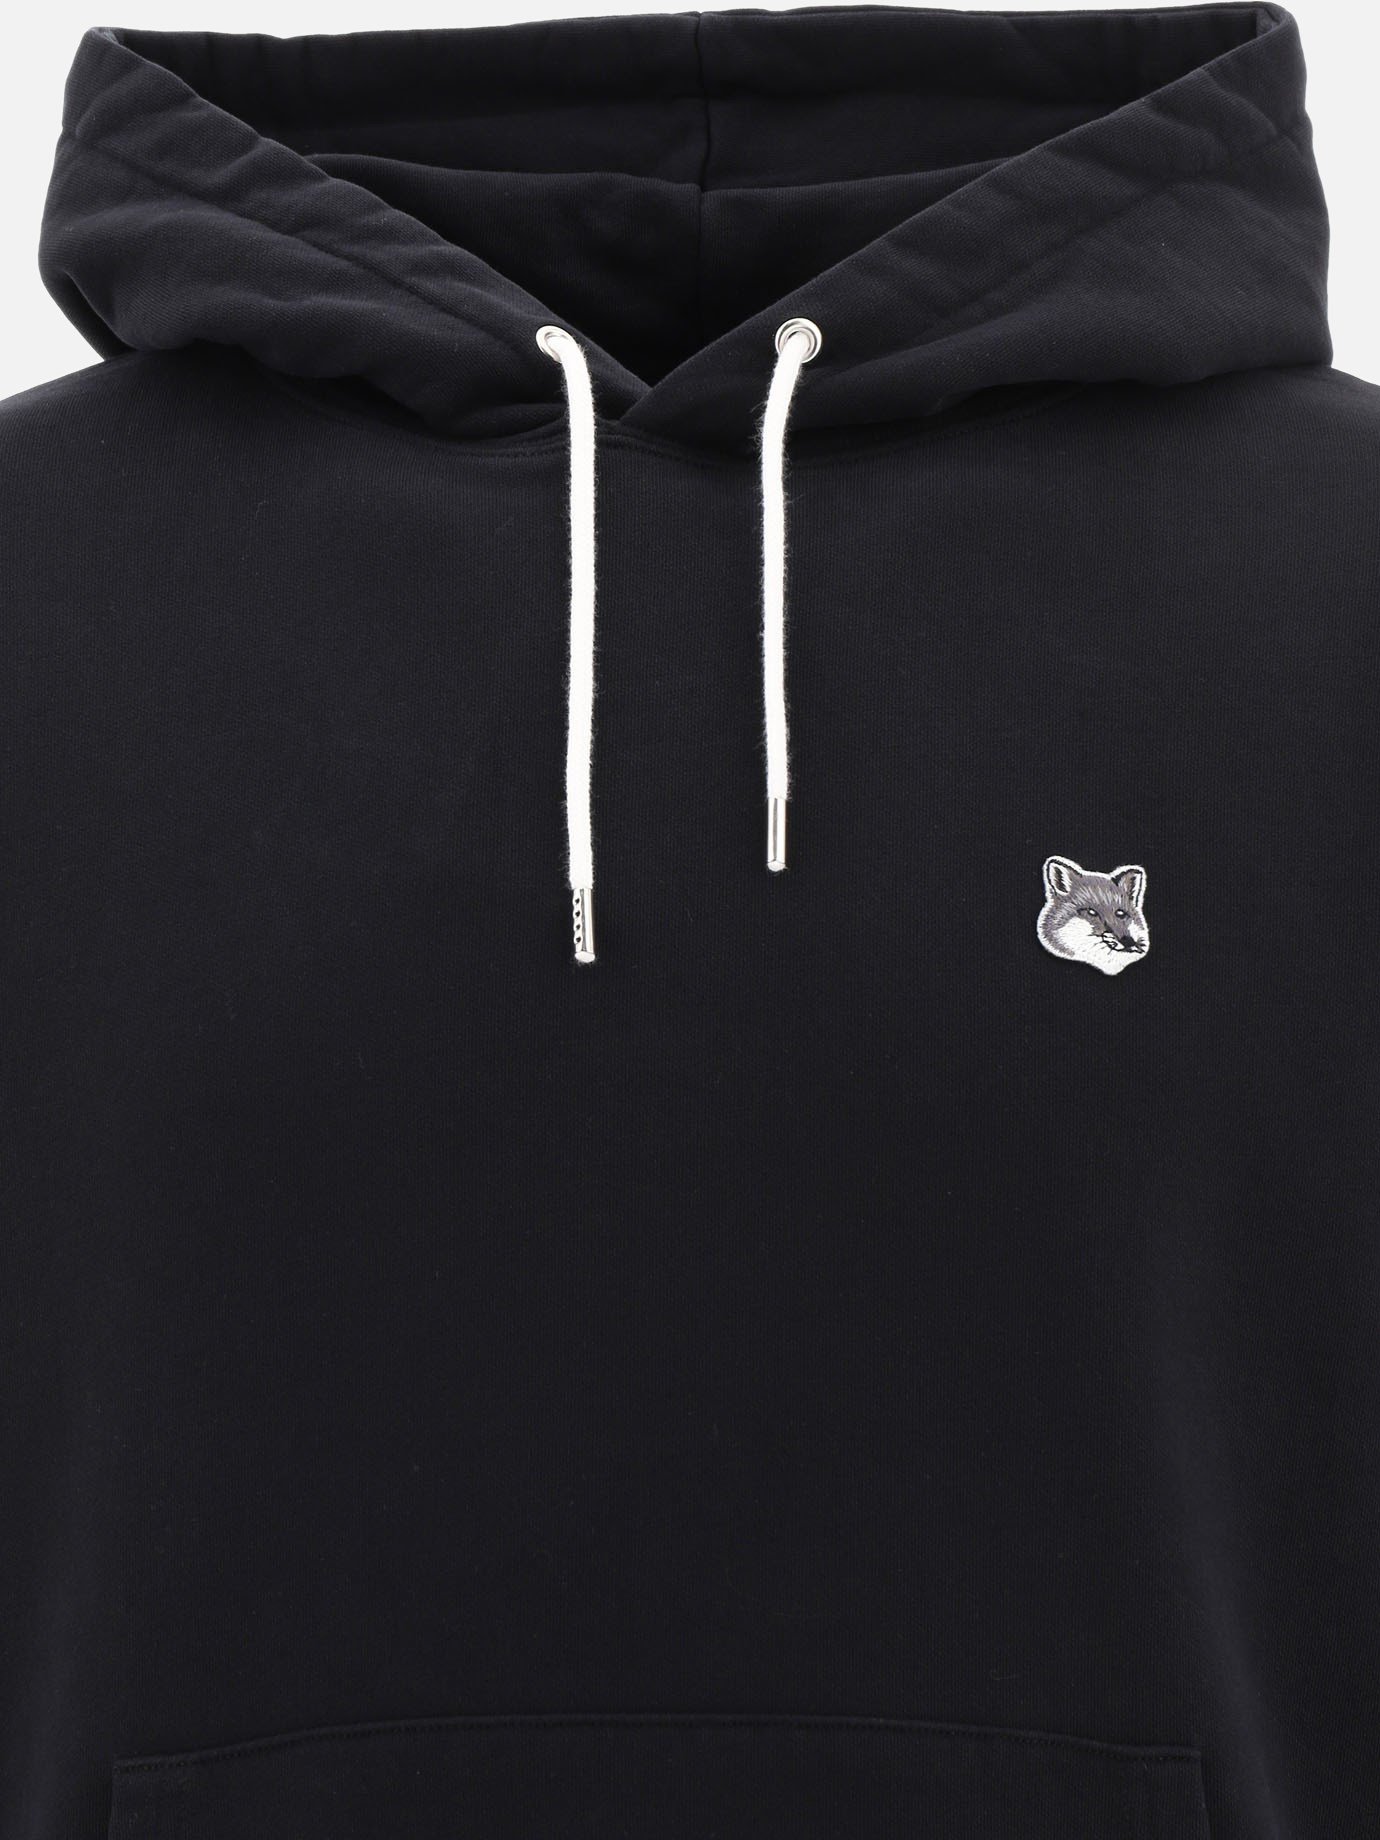  Fox Head  hoodie by Maison Kitsuné